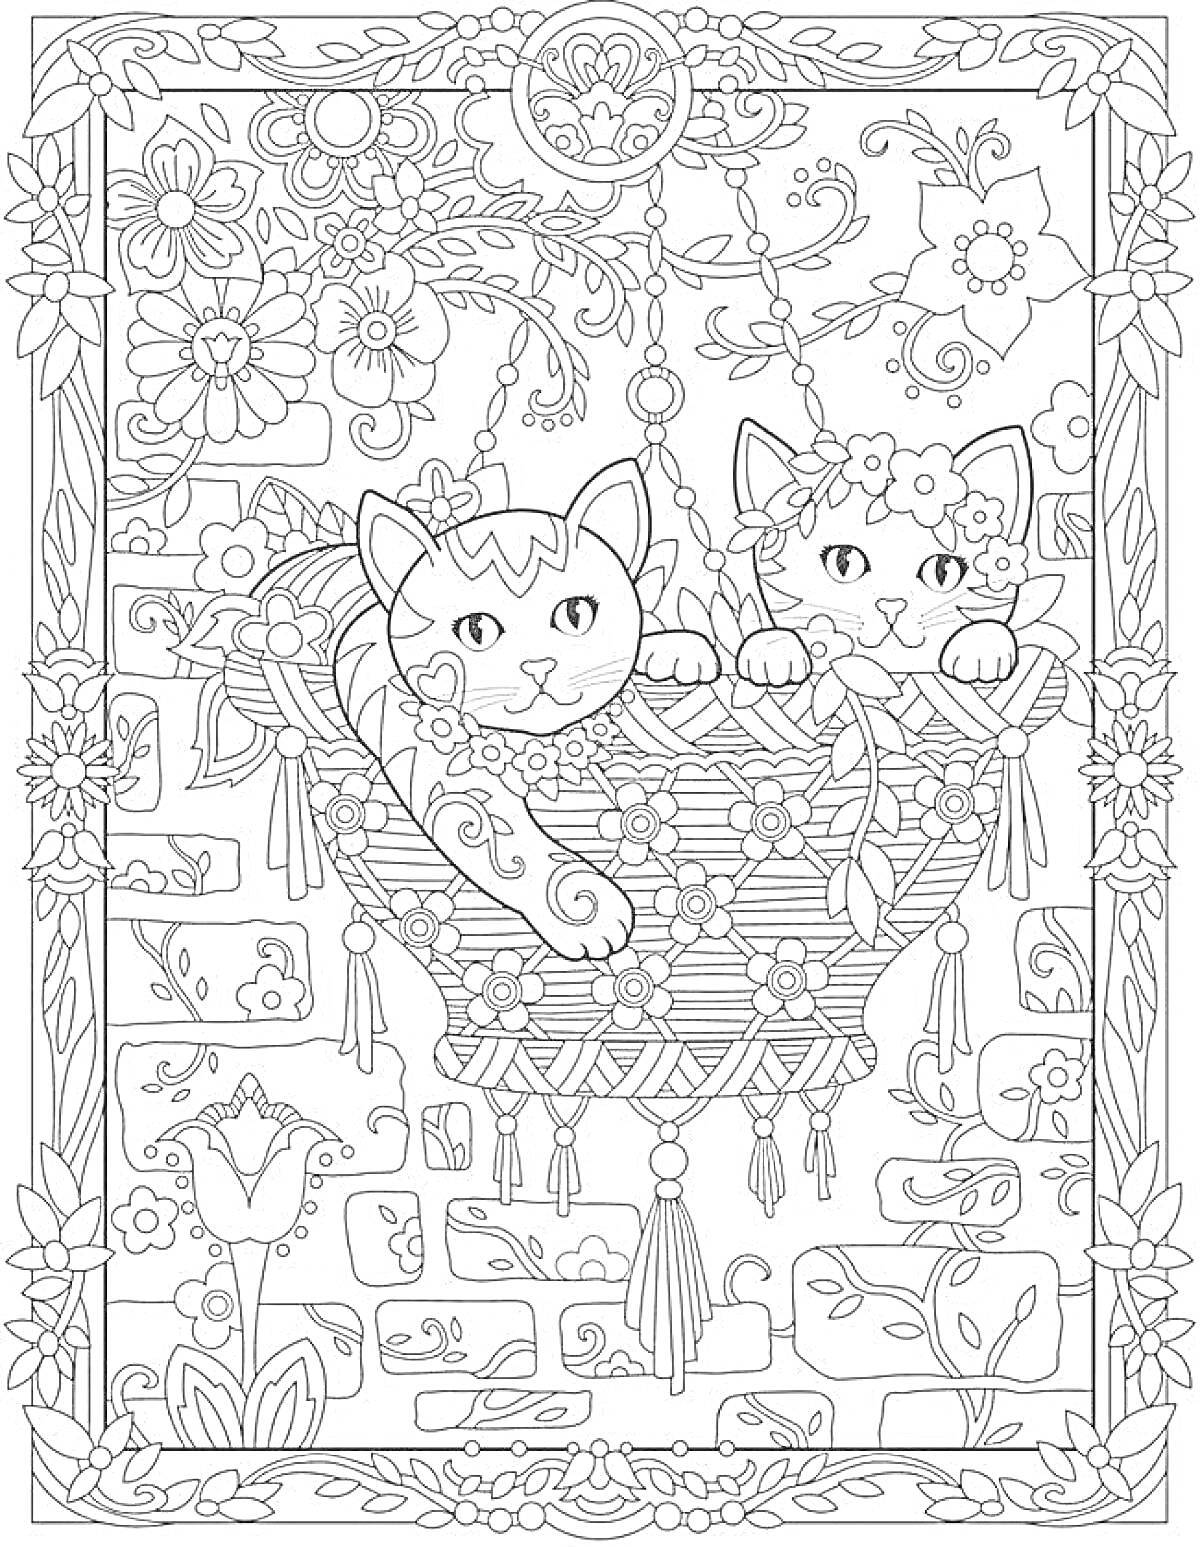 Раскраска Два котенка в плетеной корзине среди цветущих растений и декораций